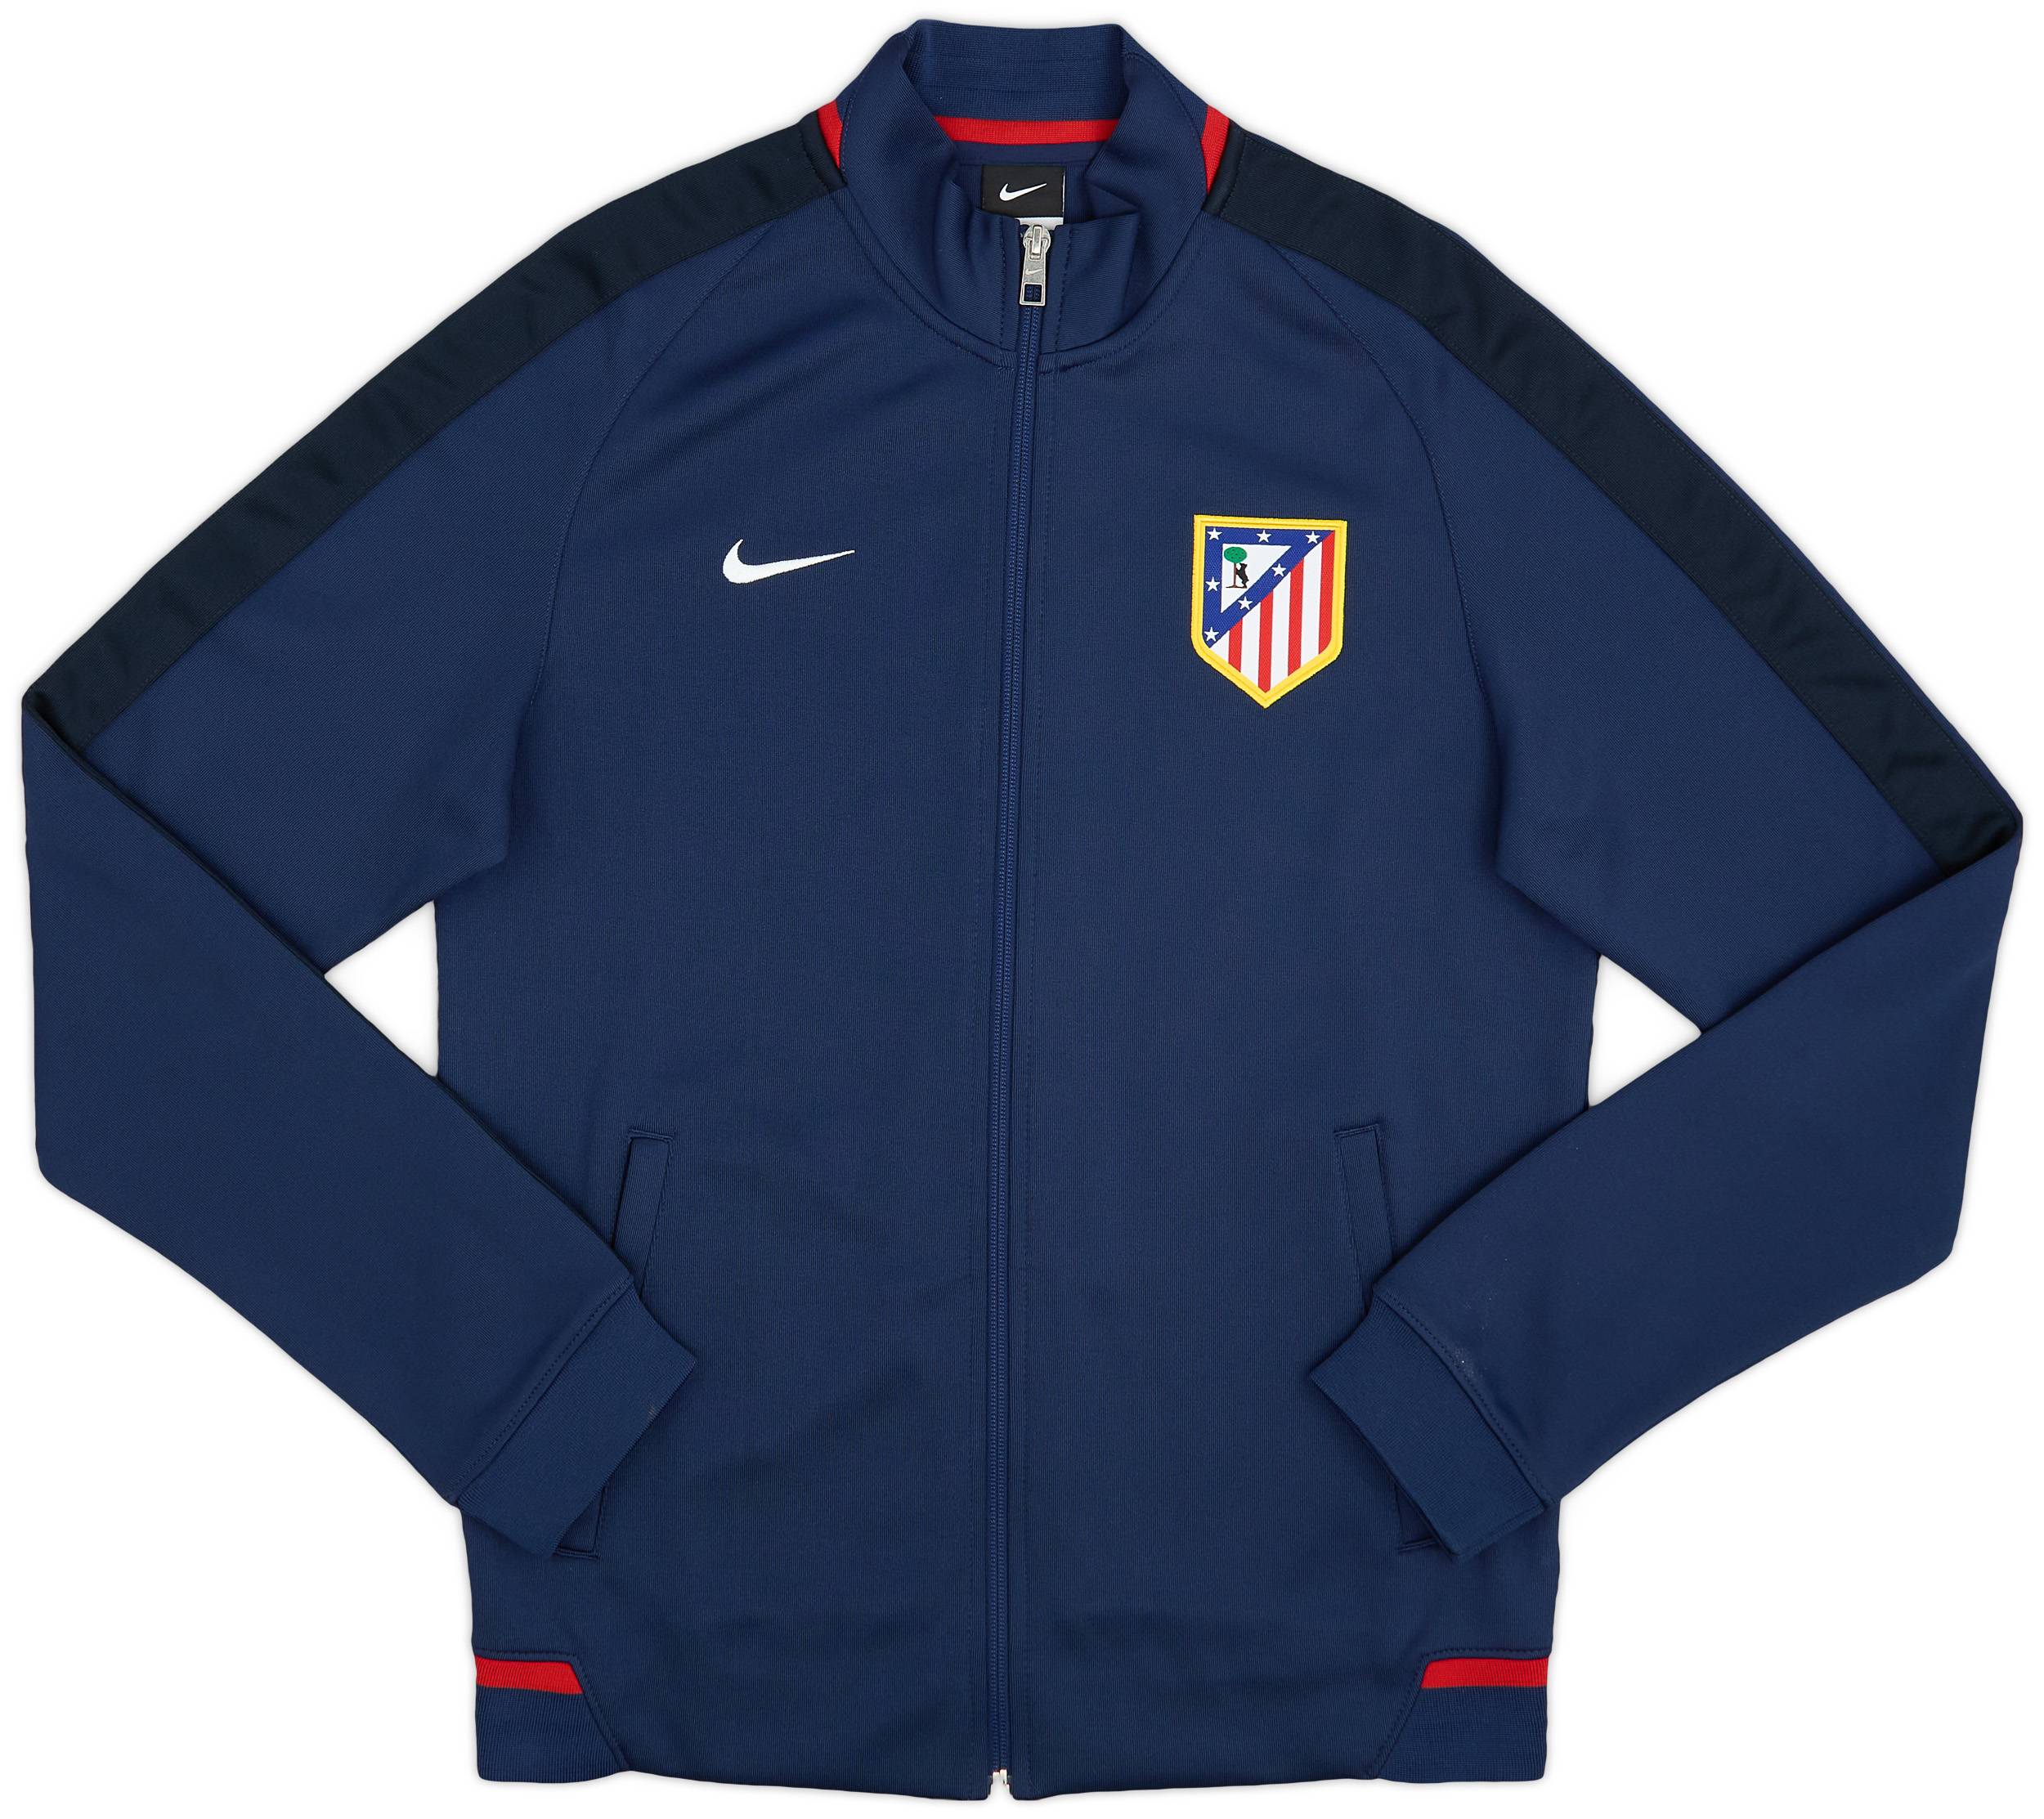 2015-16 Atletico Madrid Nike Track Jacket - 9/10 - (S)